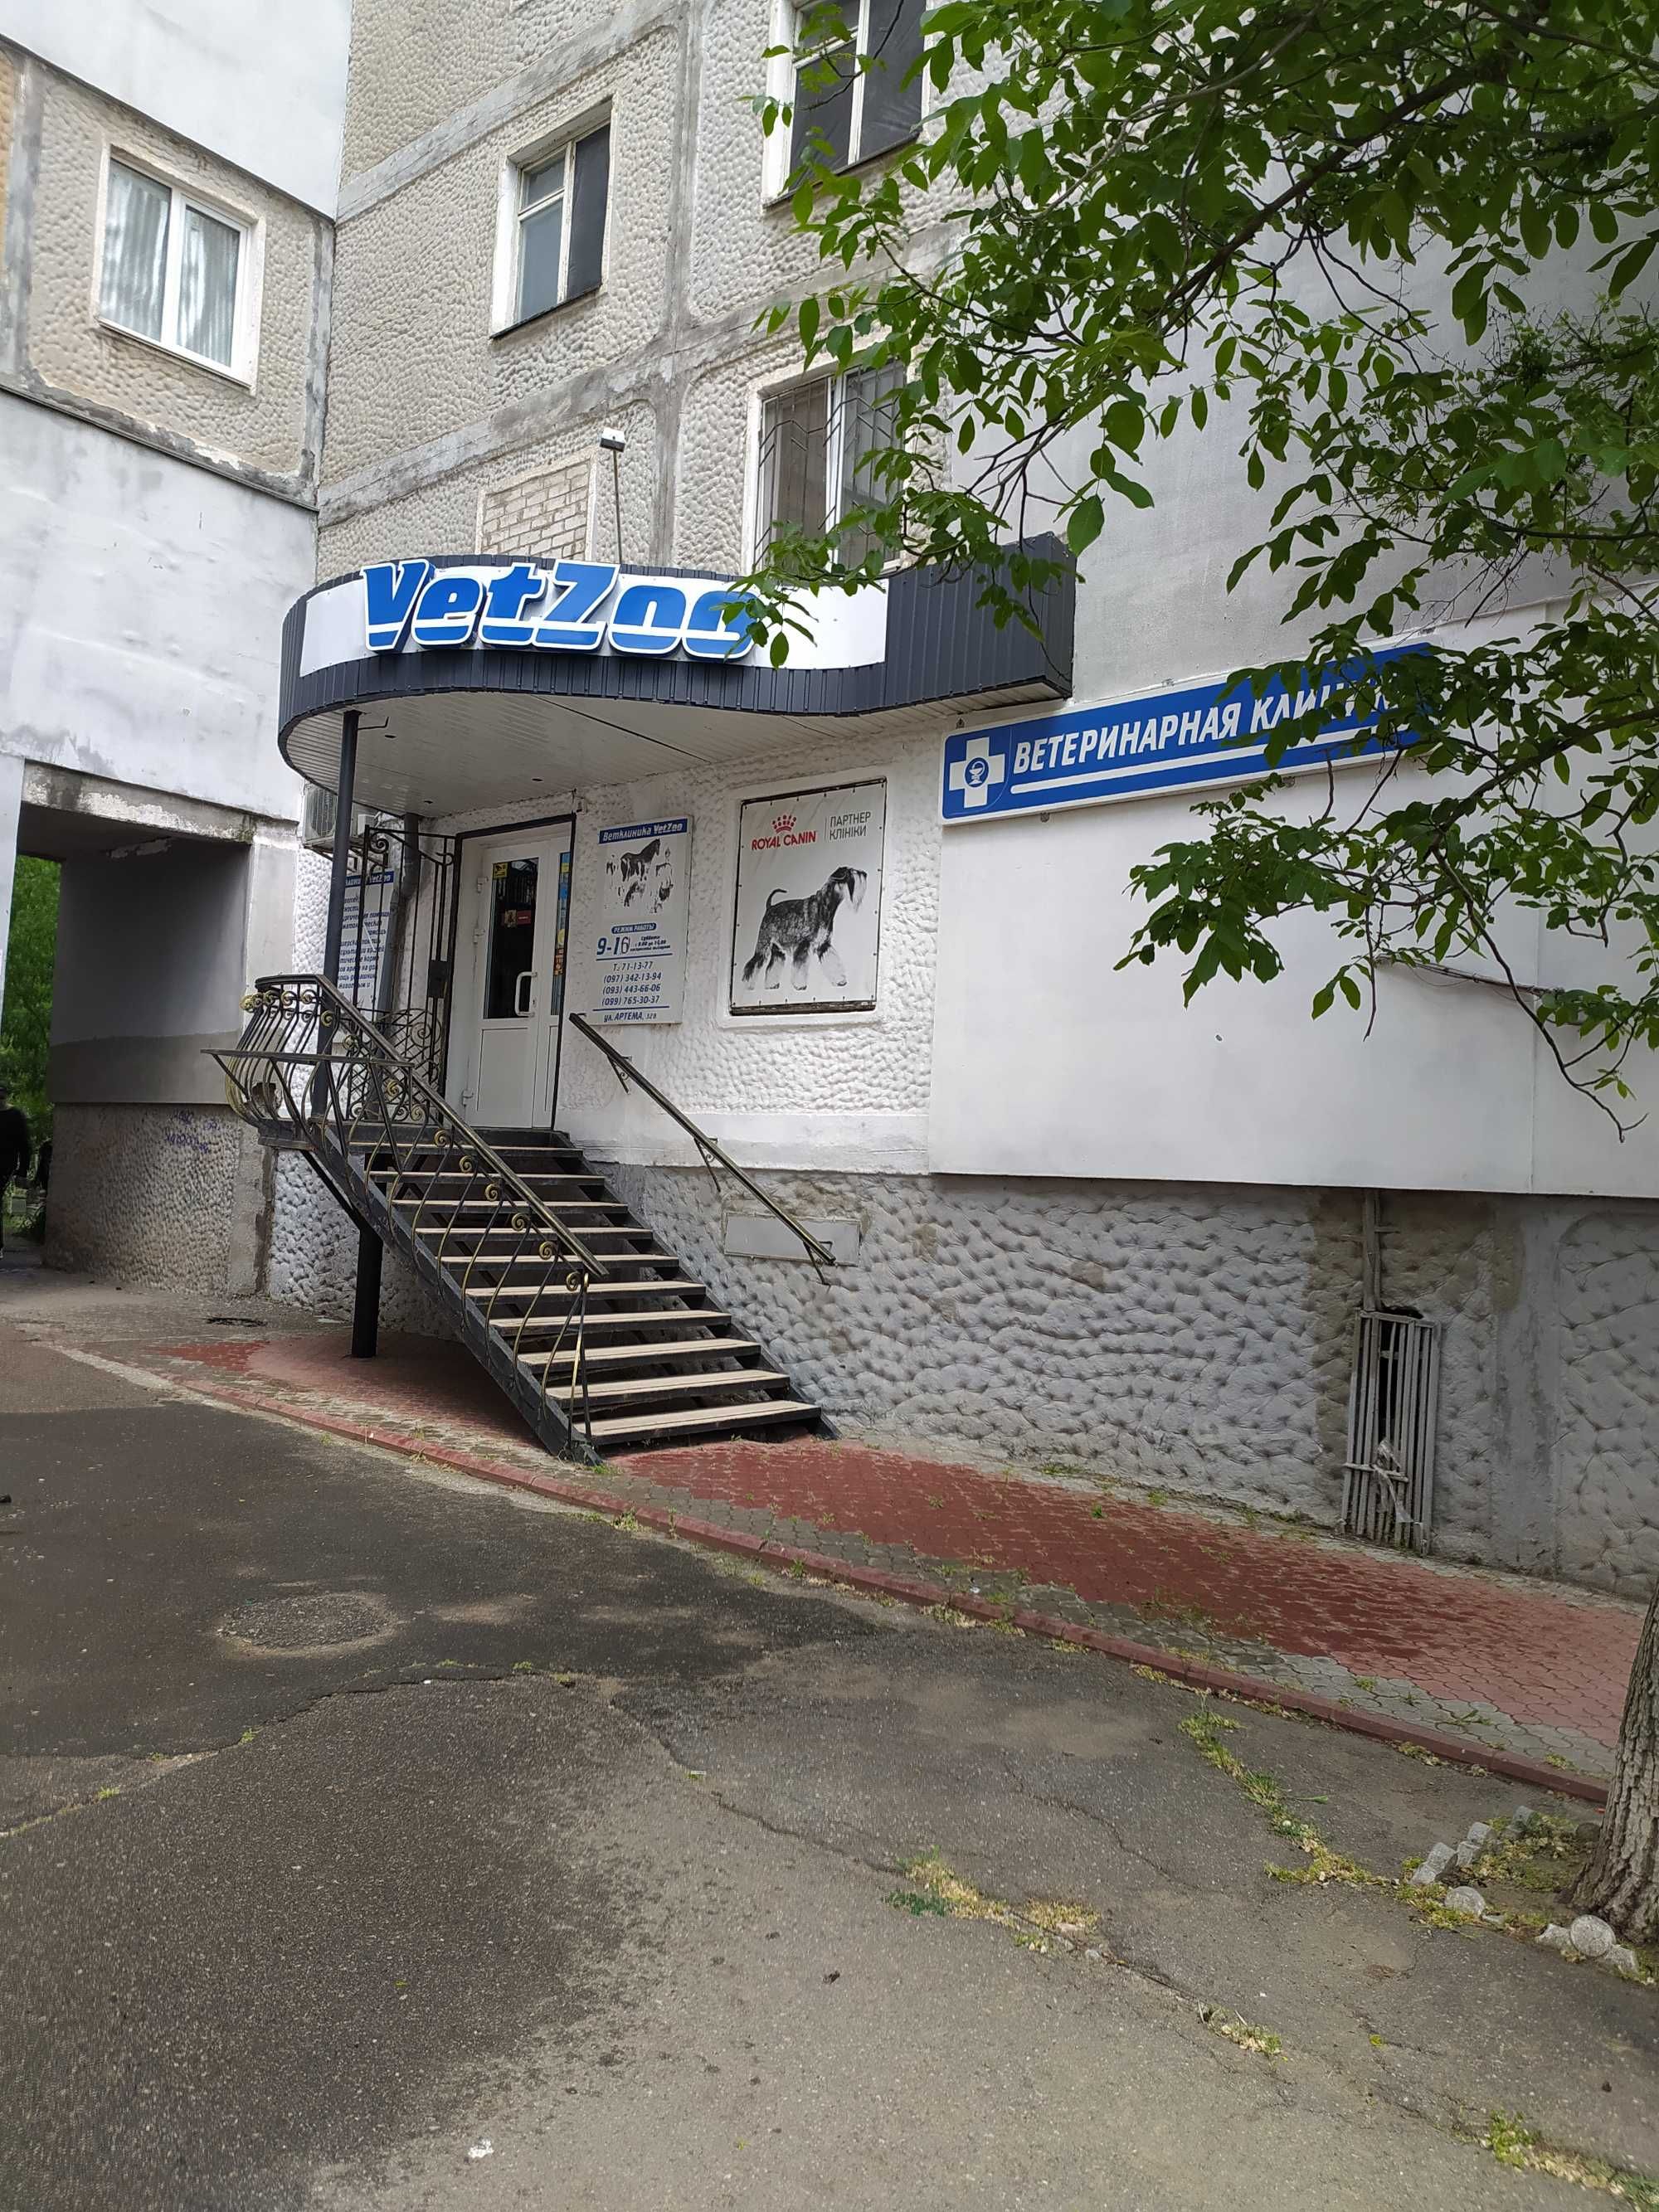 Ветеринарна клініка ,аптека "VetZoo"